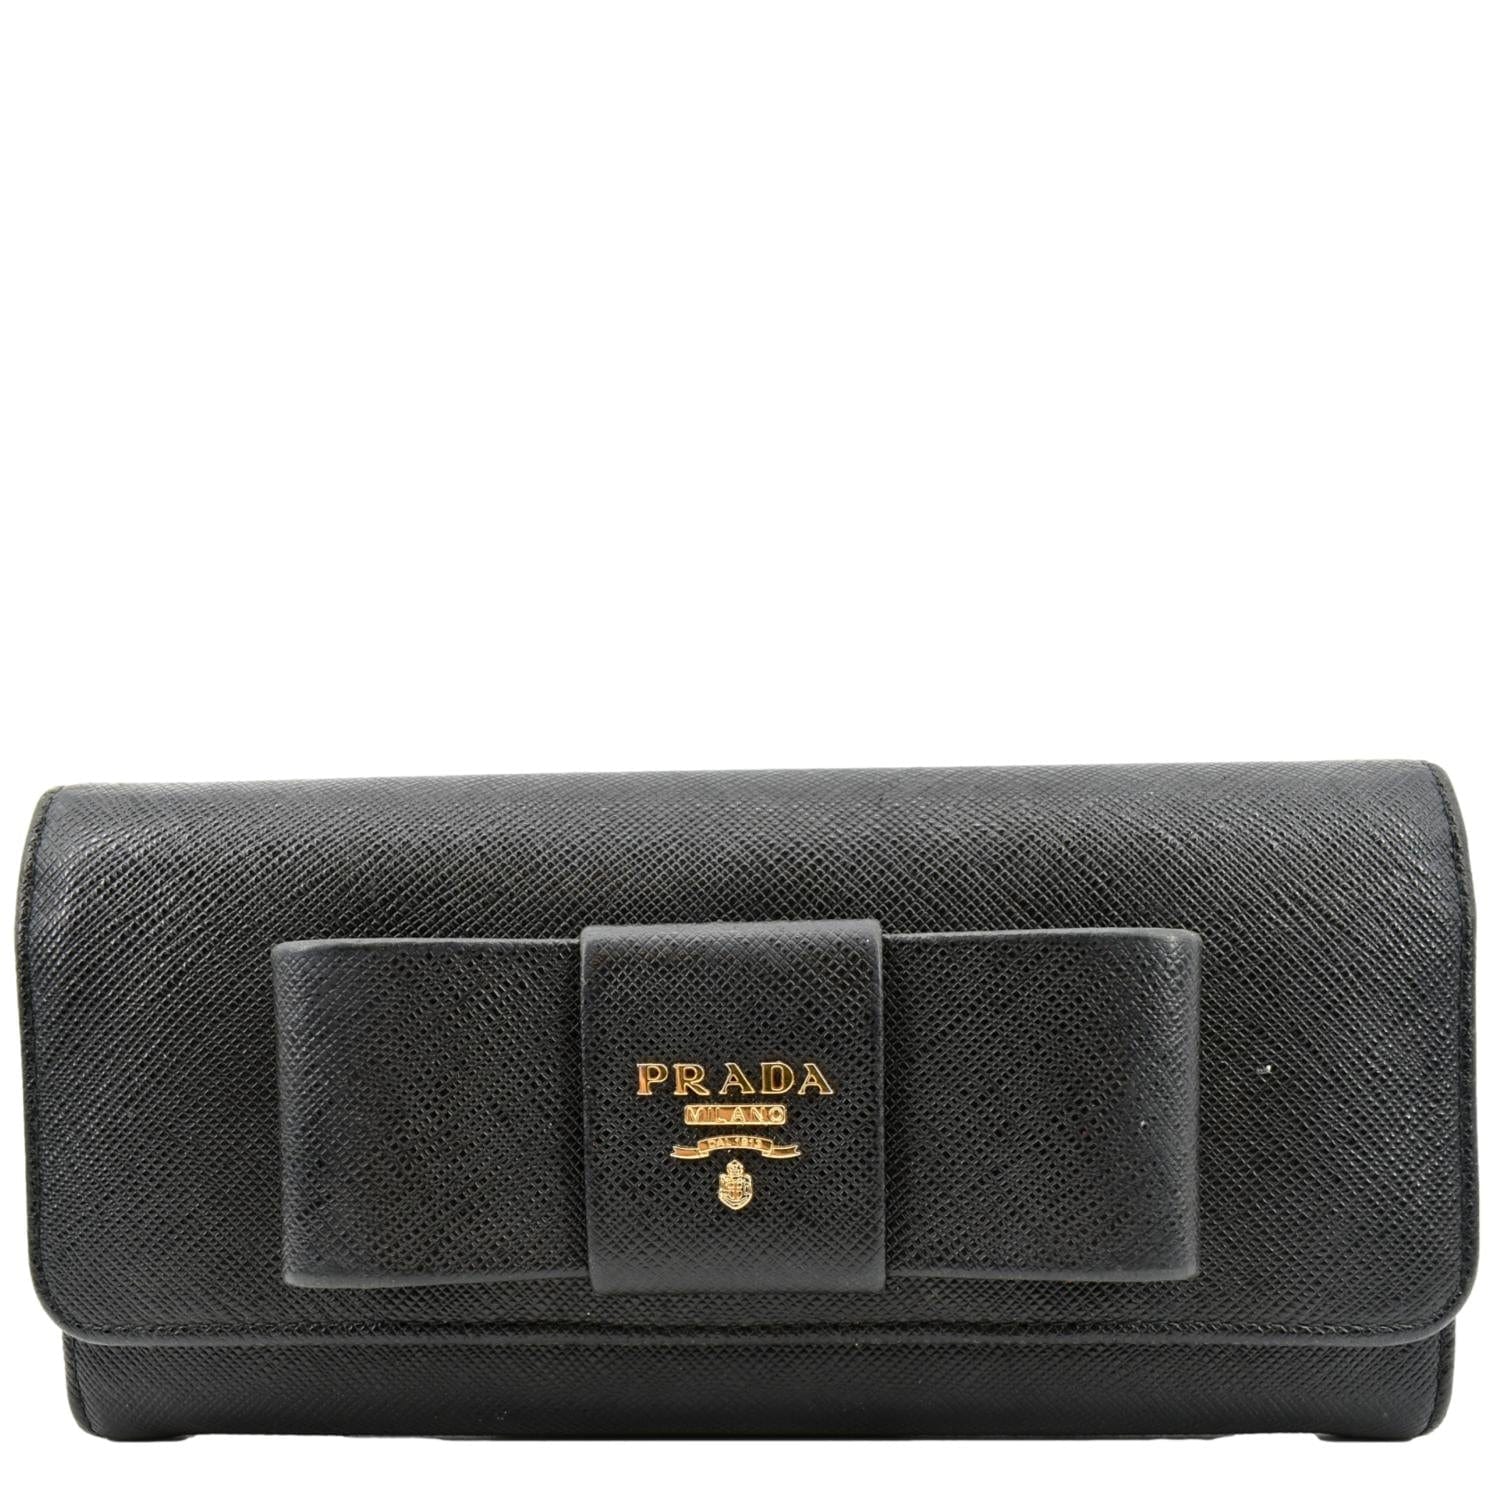 Leather Wallet in Black - Prada